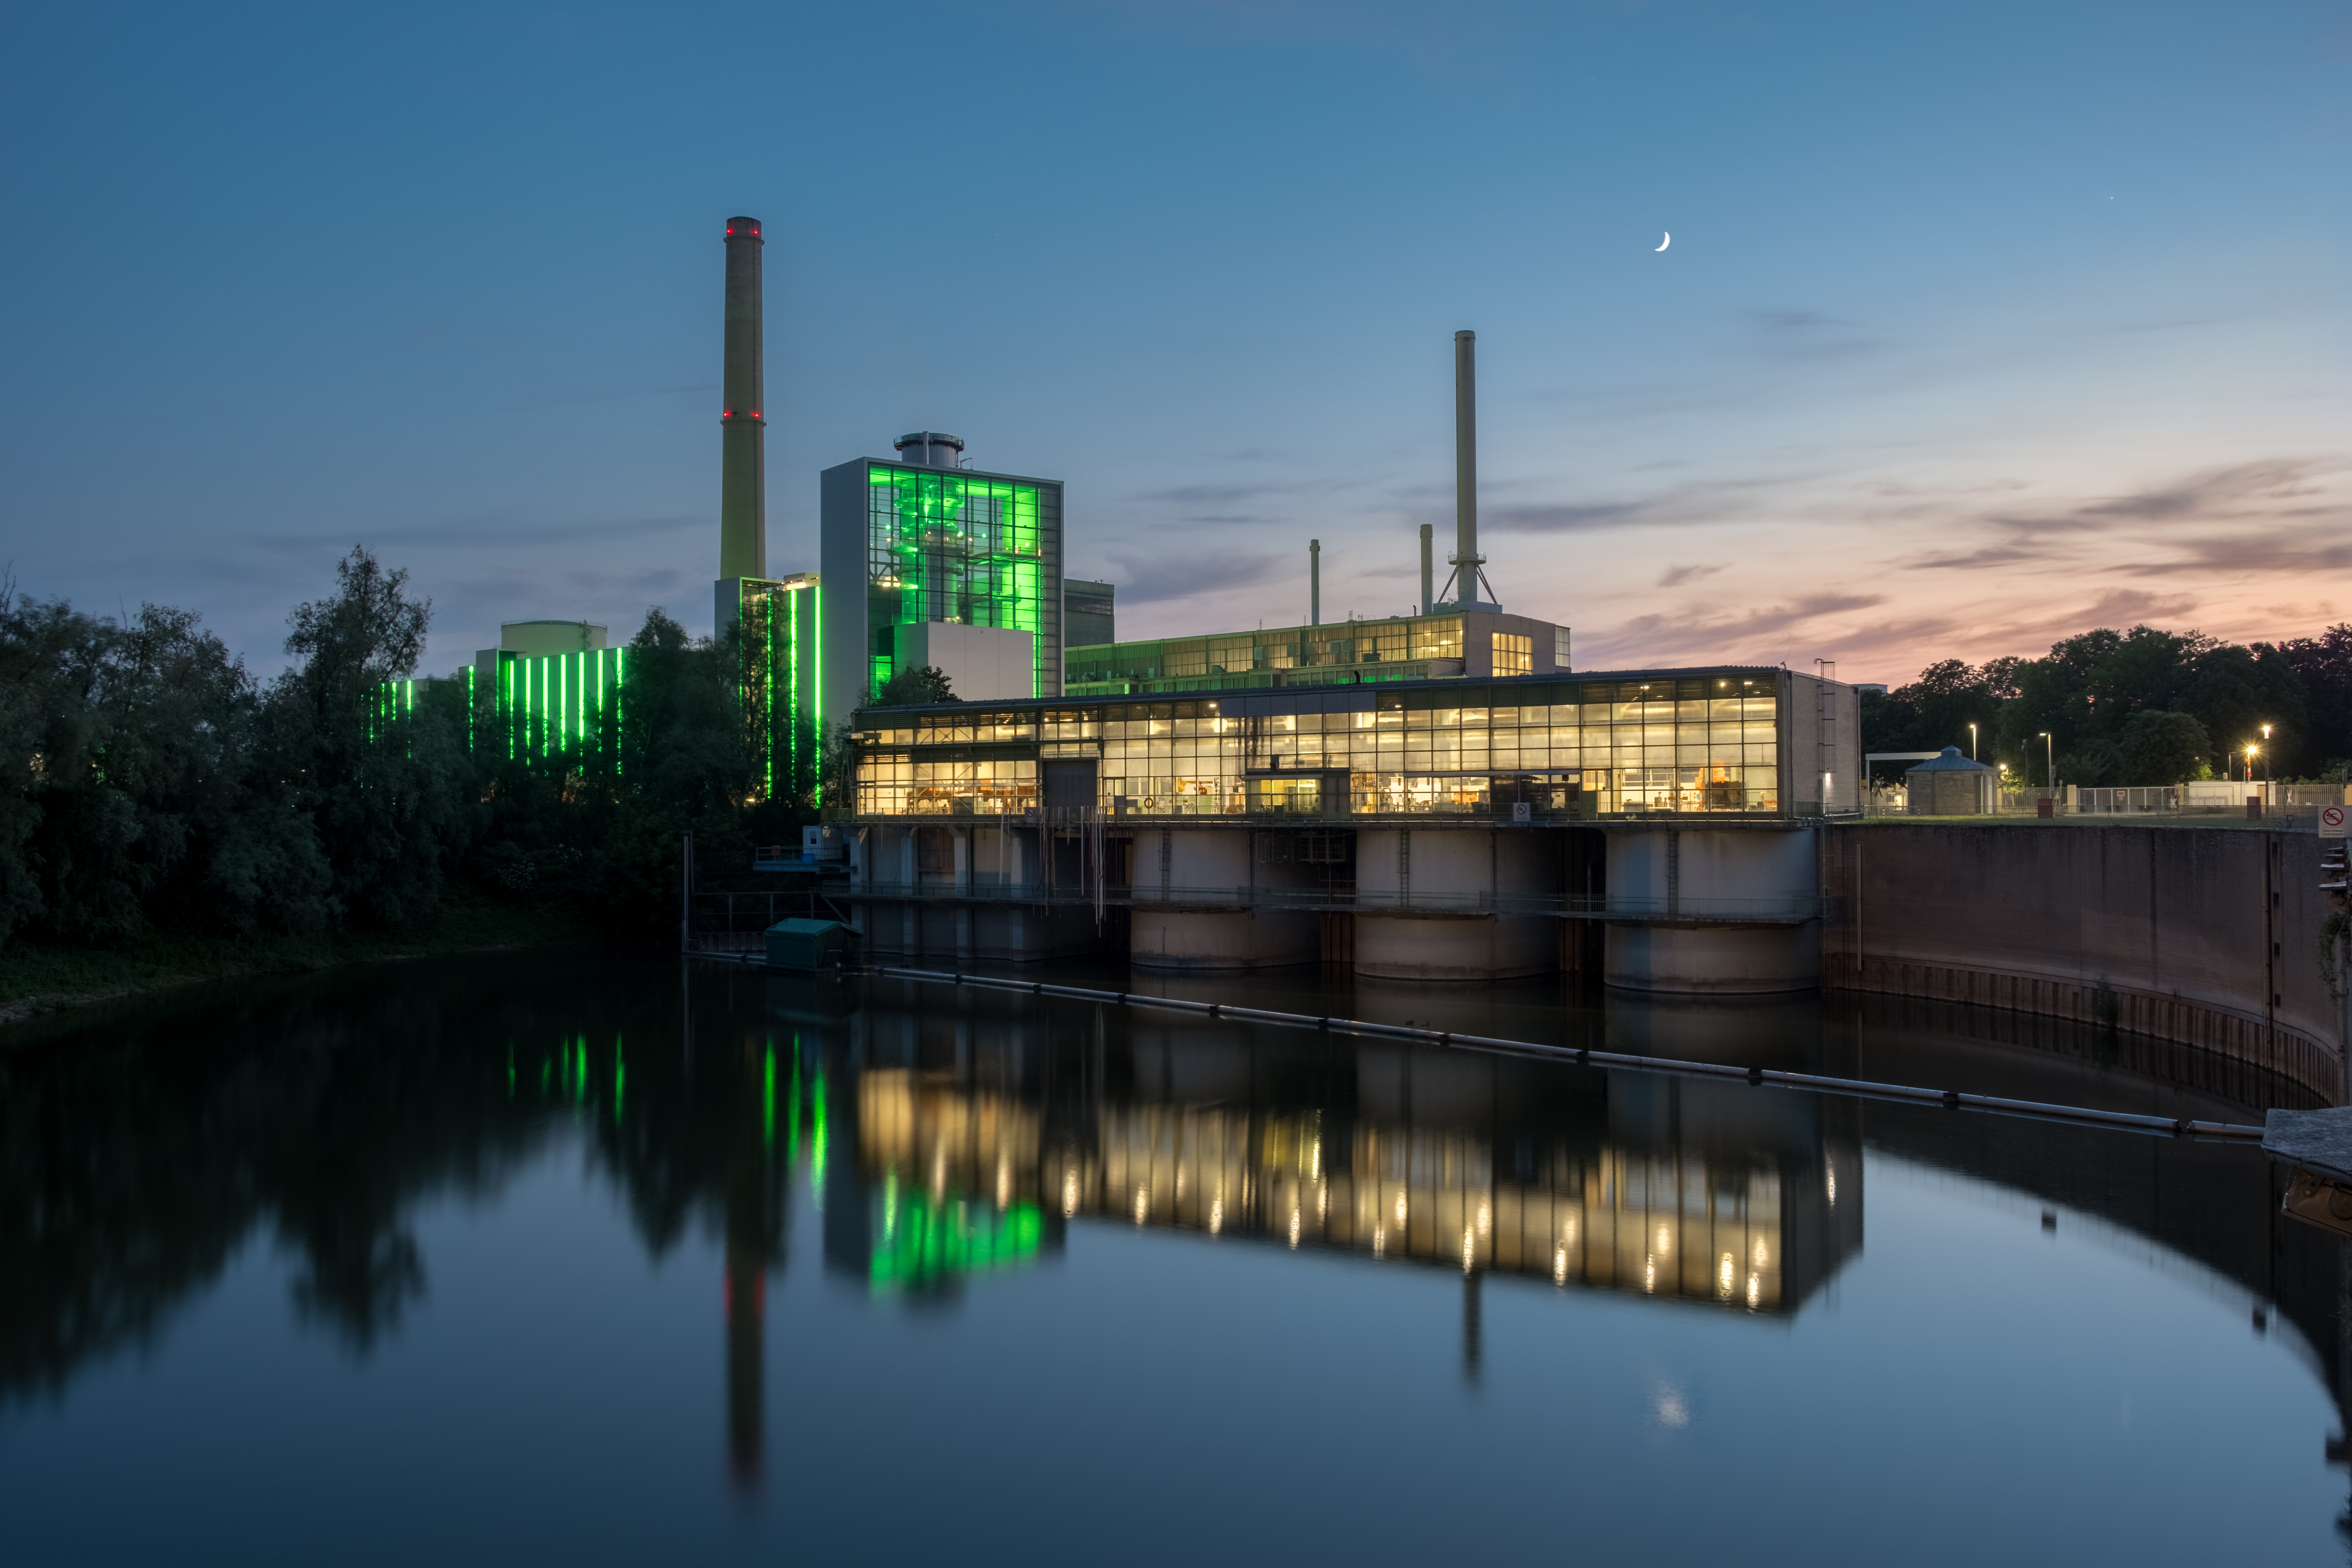 Fotograf: Thorsten Bischof, Das Bild zeigt den Block "Fortuna" des Gas- und Dampfturbinenkraftwerks "Lausward" zur Blauen Stunde.